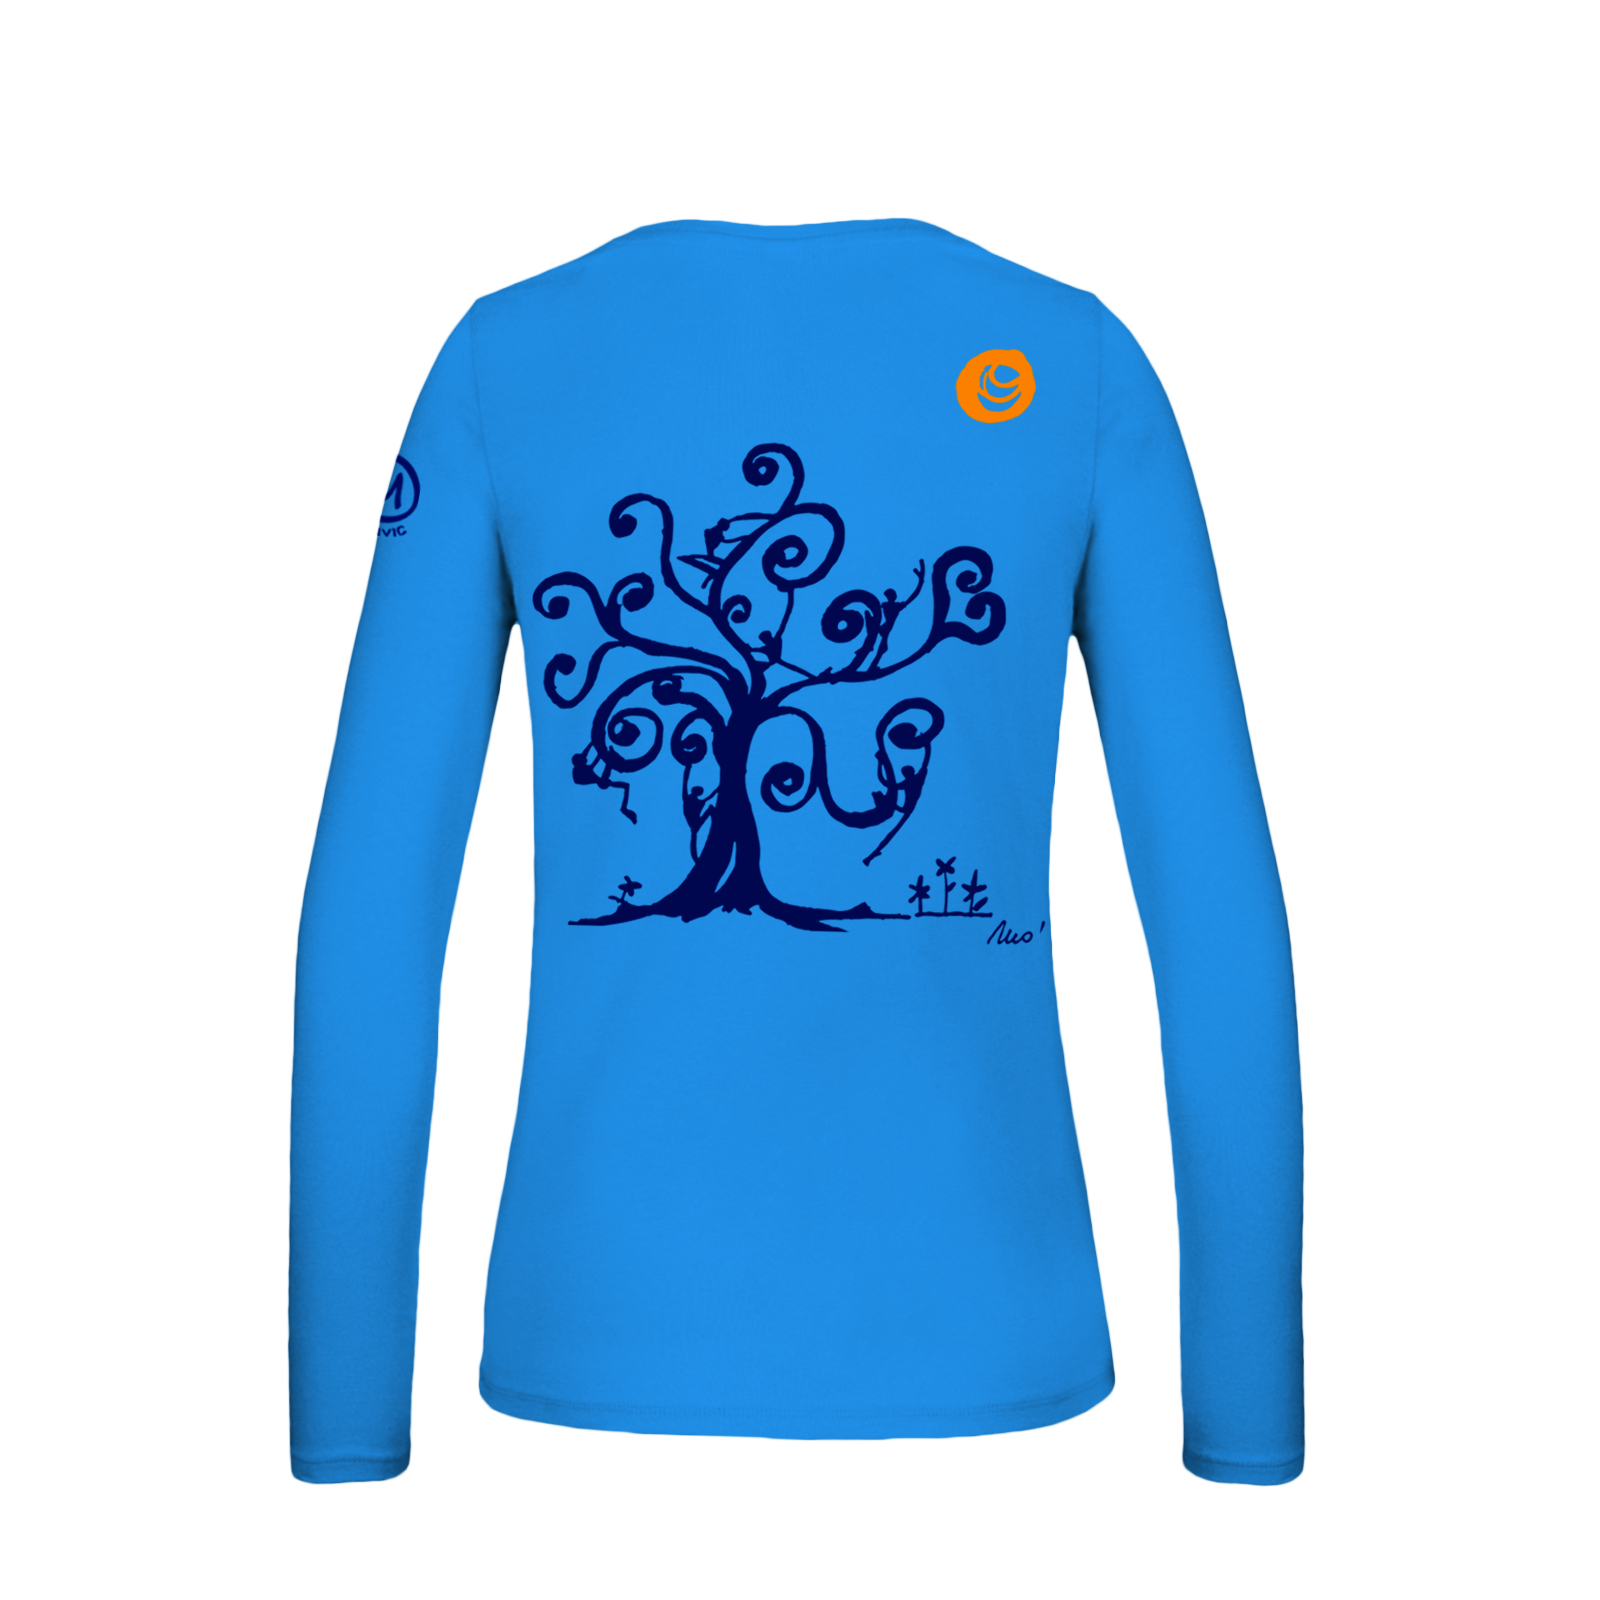 T-shirt a maniche lunghe donna con collo a V azzurra per arrampicata e sport MOLLY Monvic